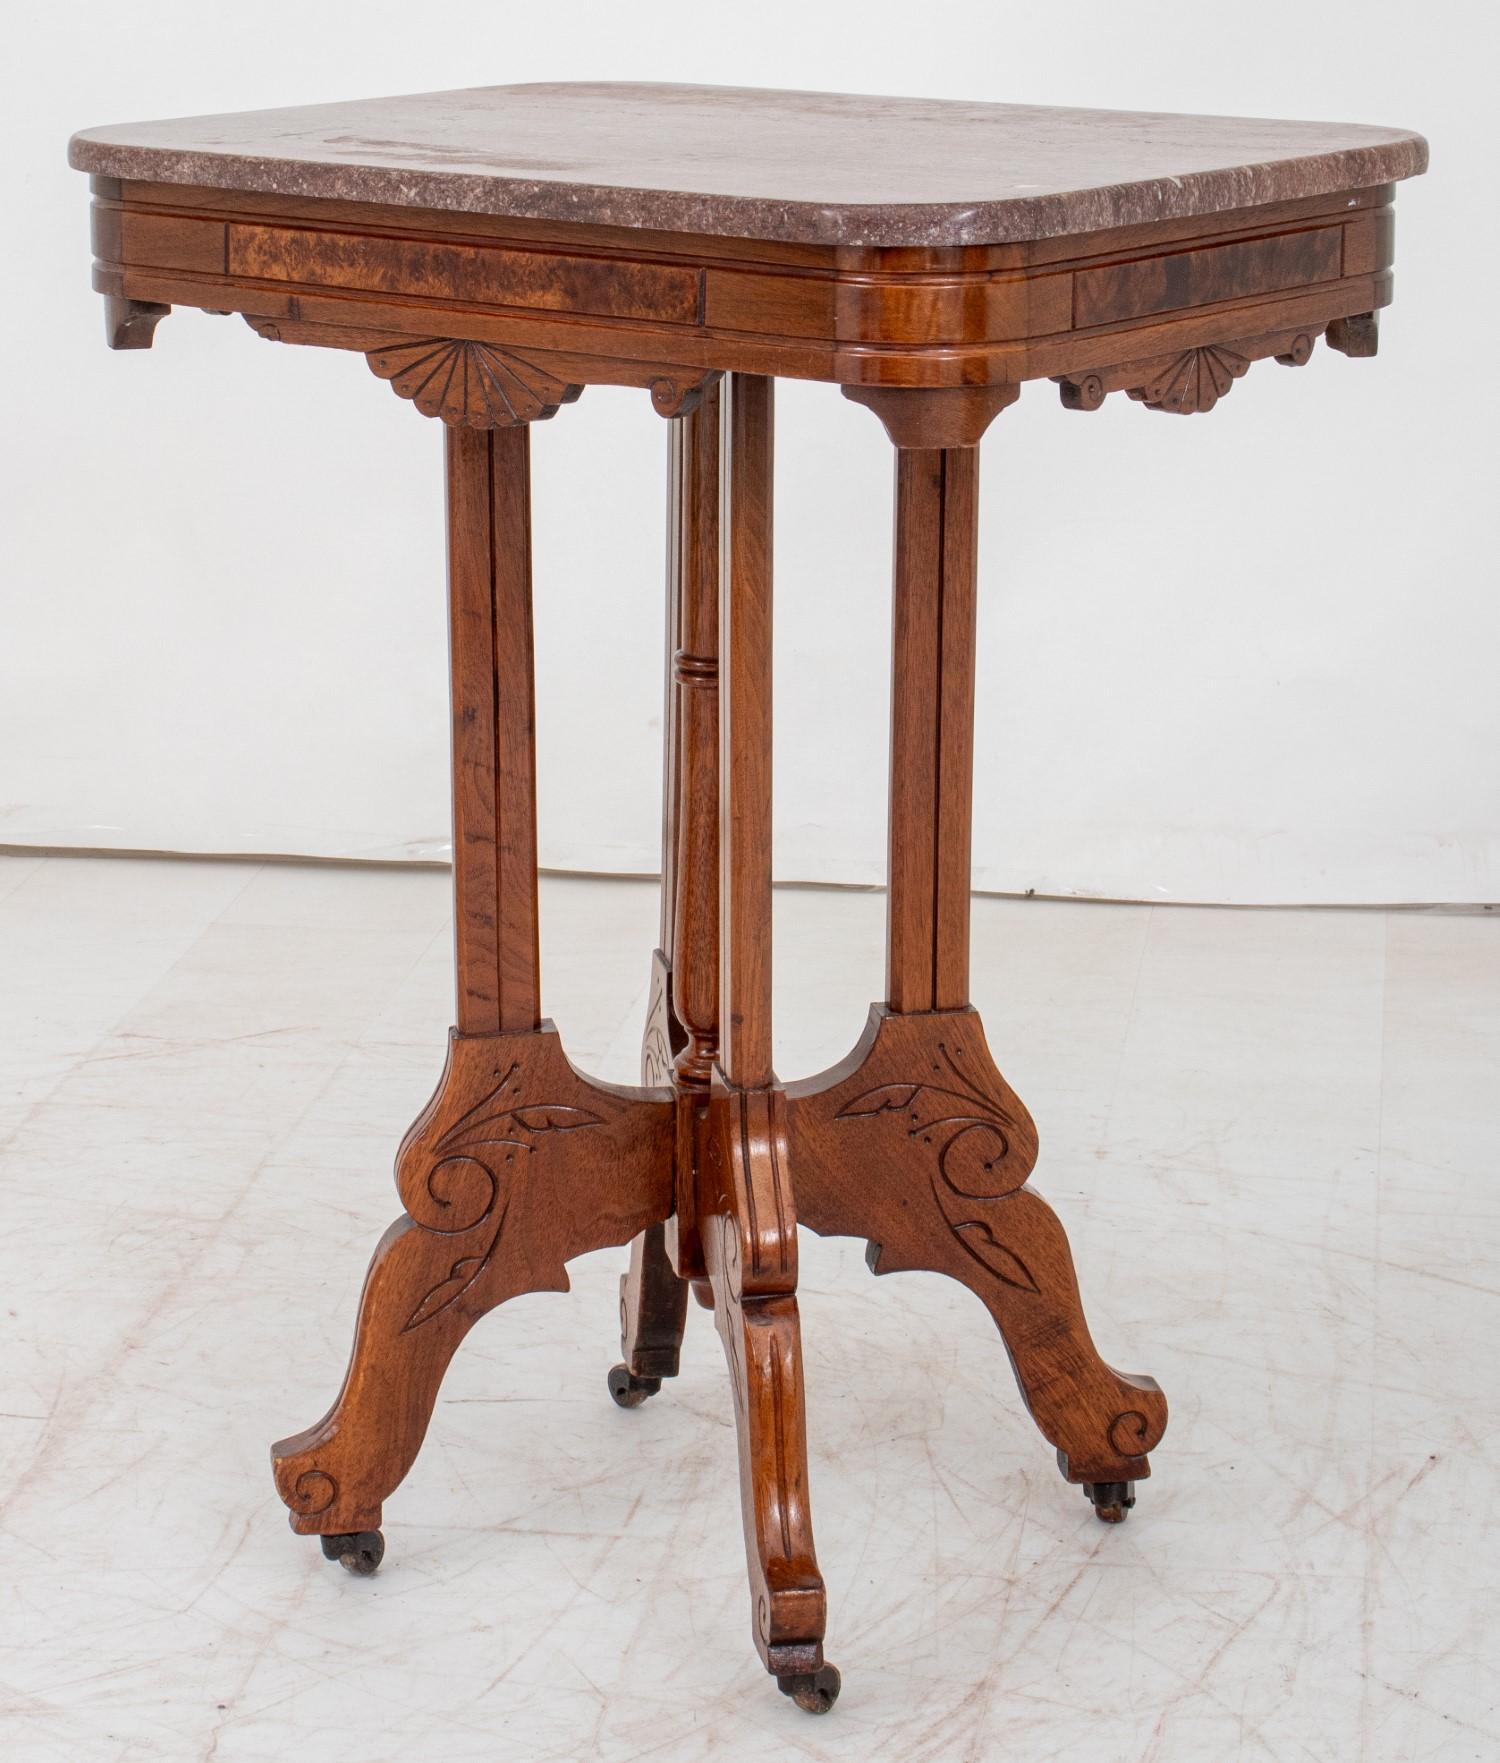 Viktorianischer Stil Nussbaum Marmorplatte Tisch mit  Ritzdekoration Blattdekoration und  Zierleiste aus Wurzelholz, auf vier Beinen mit Rollen.  Mit einer Höhe von 30 Zoll, einer Breite von 23,75 Zoll und einer Tiefe von 17 Zoll eignet sich dieser